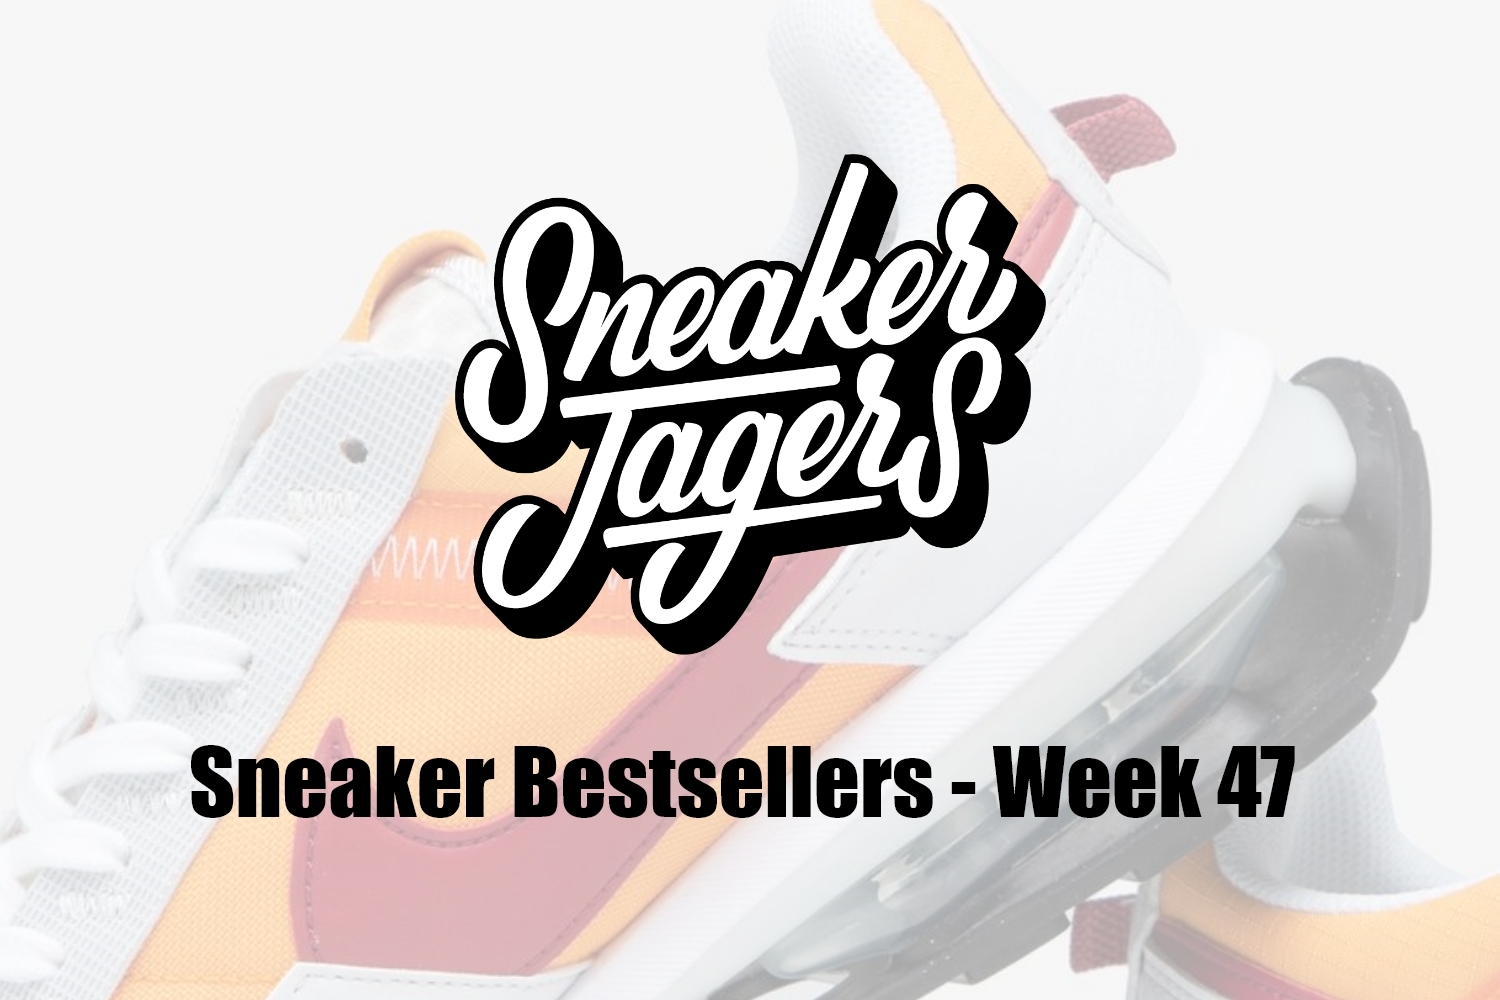 Our Sneaker Bestsellers - Week 47 - What's on Trend 📈